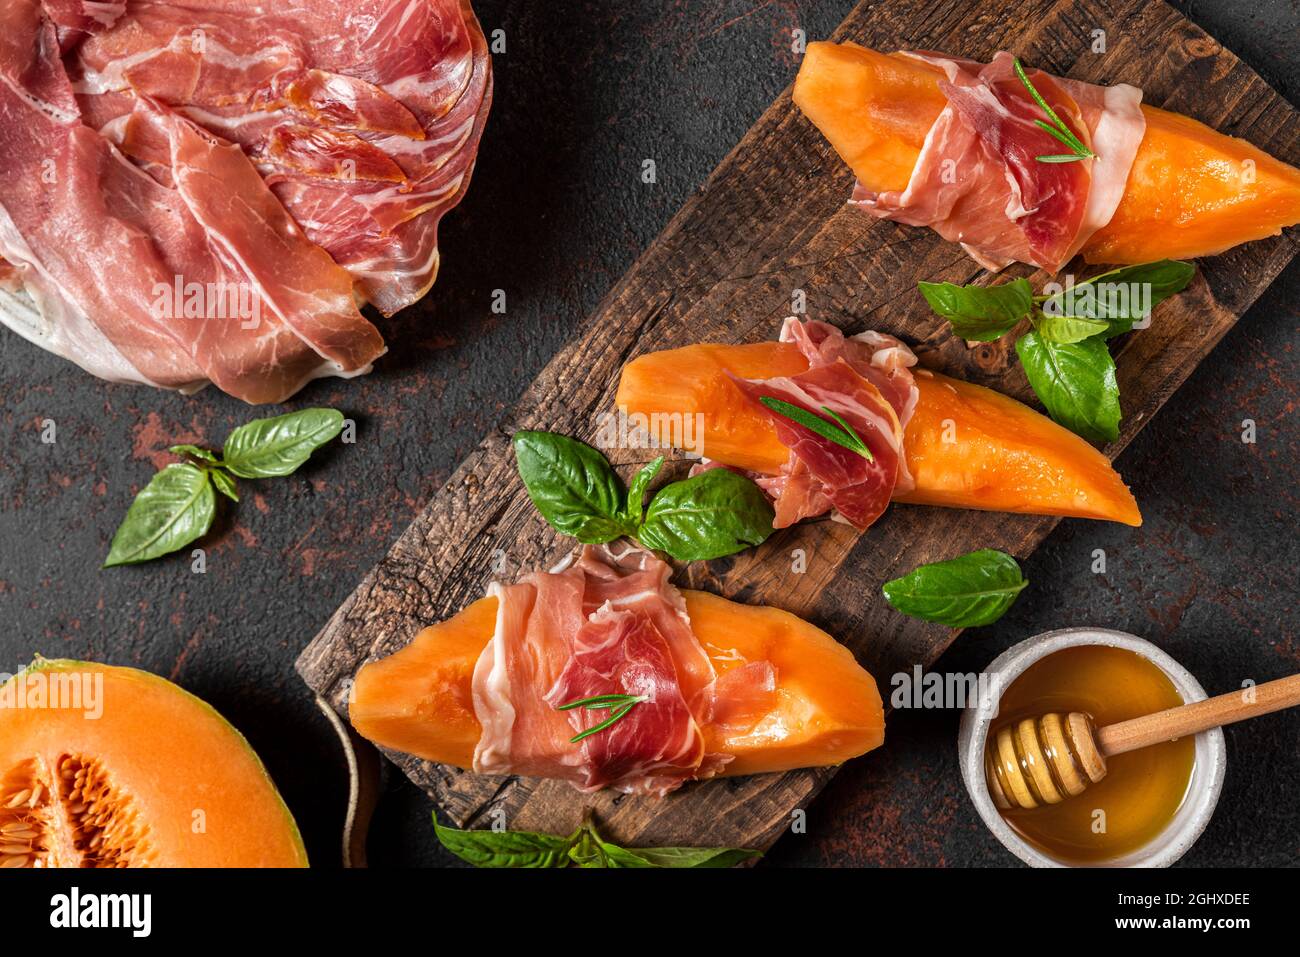 Prosciutto-Schinken mit Melone-Cantaloupe-Scheiben, Honig und Basilikum auf Schneidebrett auf dunklem Hintergrund. Italienische Vorspeise. Draufsicht. Gesunde Ernährung Stockfoto